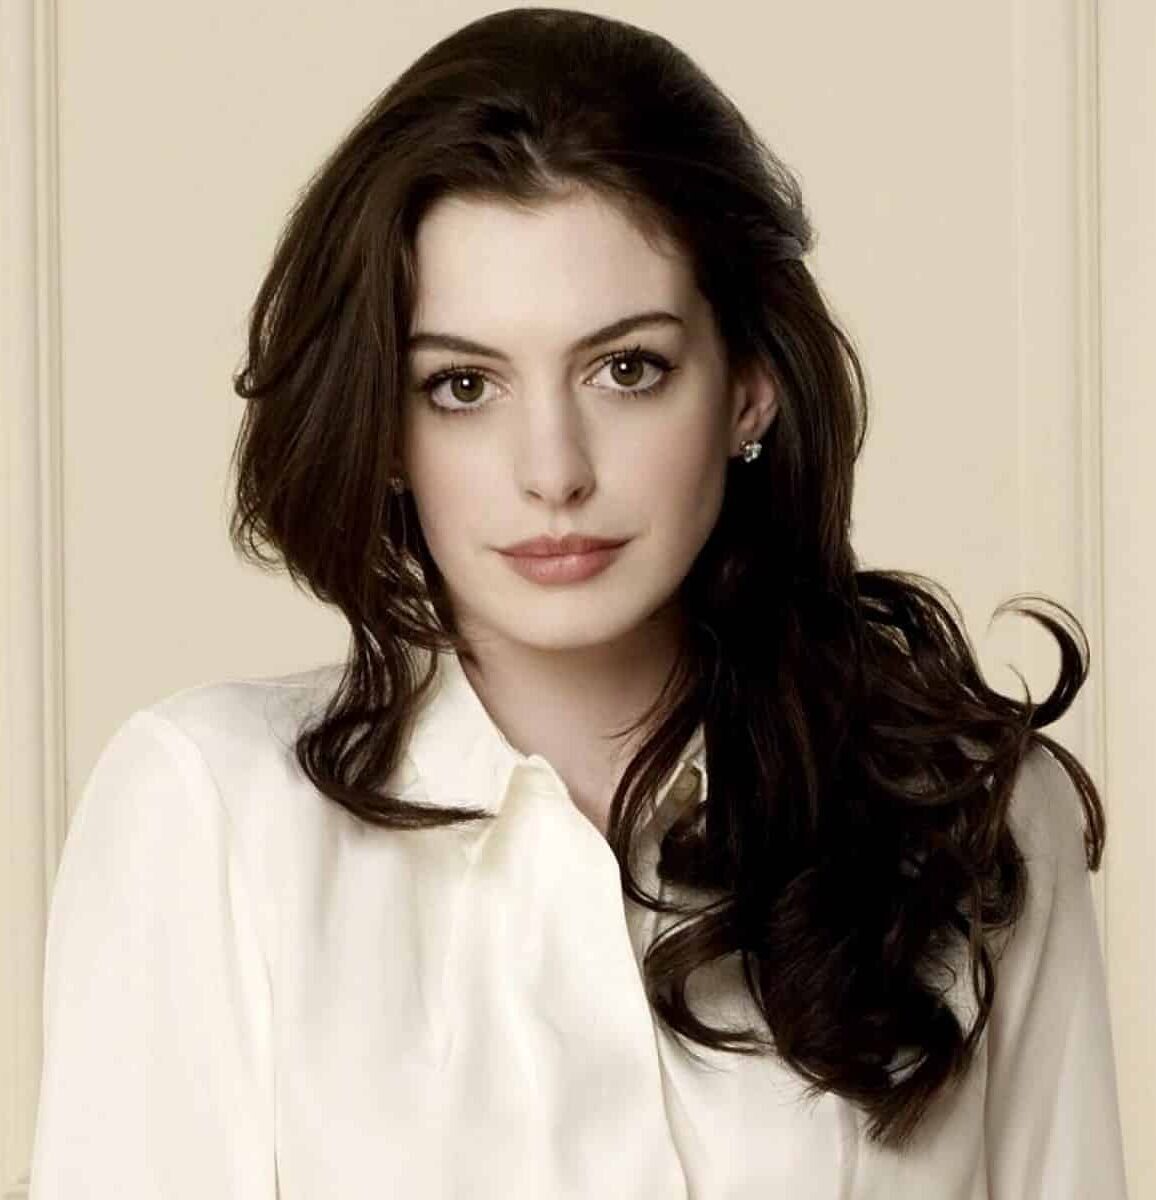 Anne-Hathaway